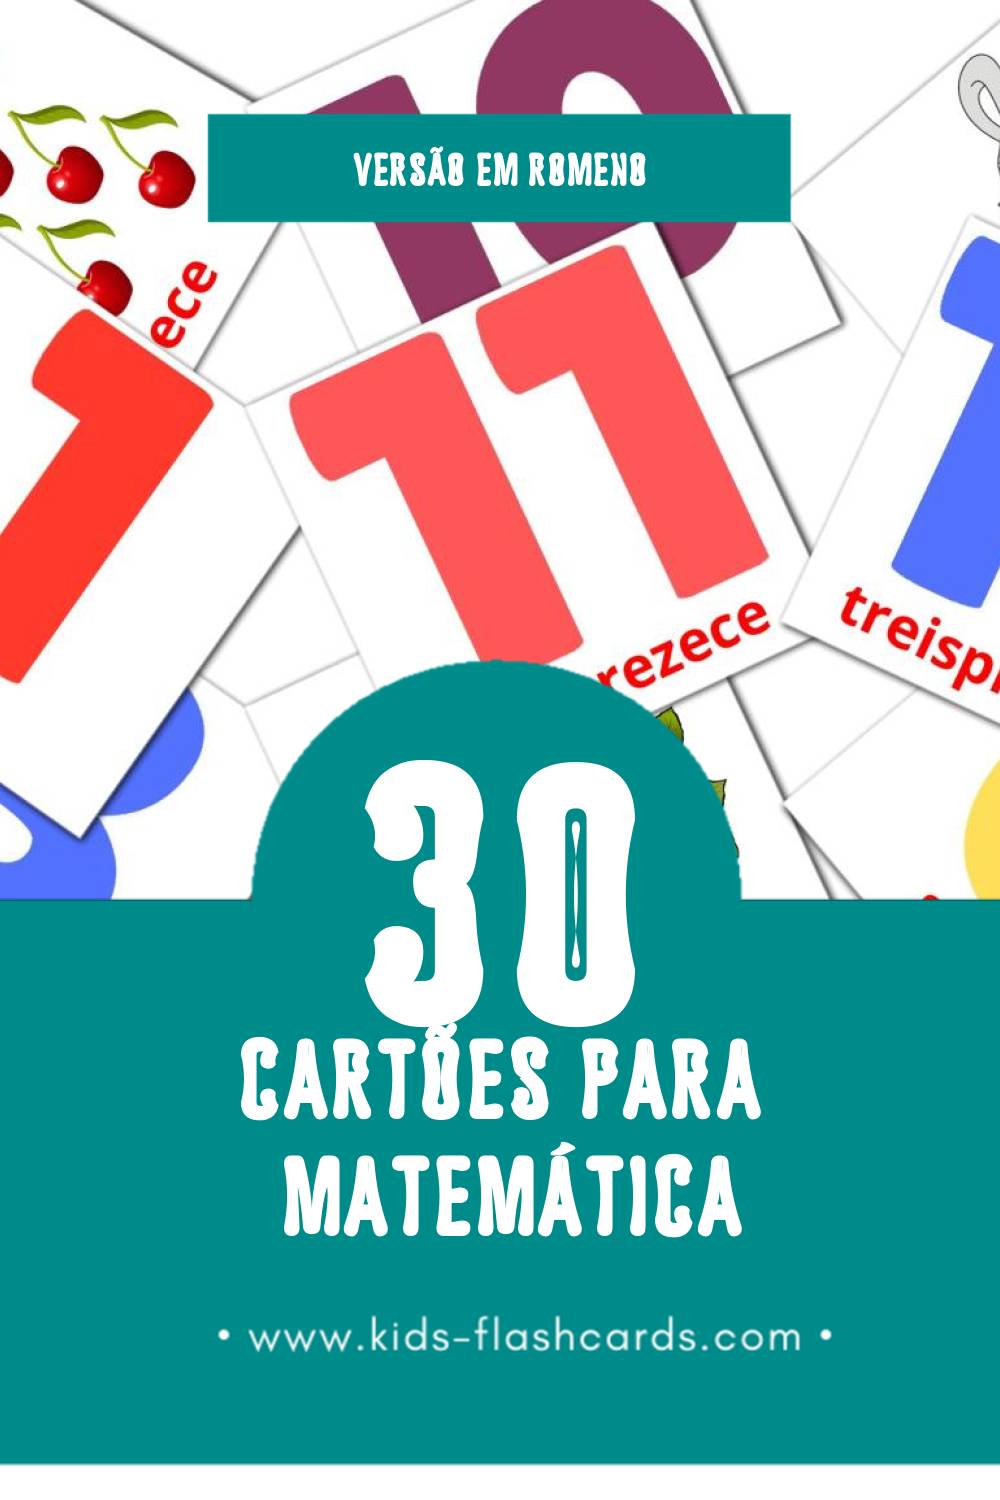 Flashcards de Matematică Visuais para Toddlers (30 cartões em Romeno)